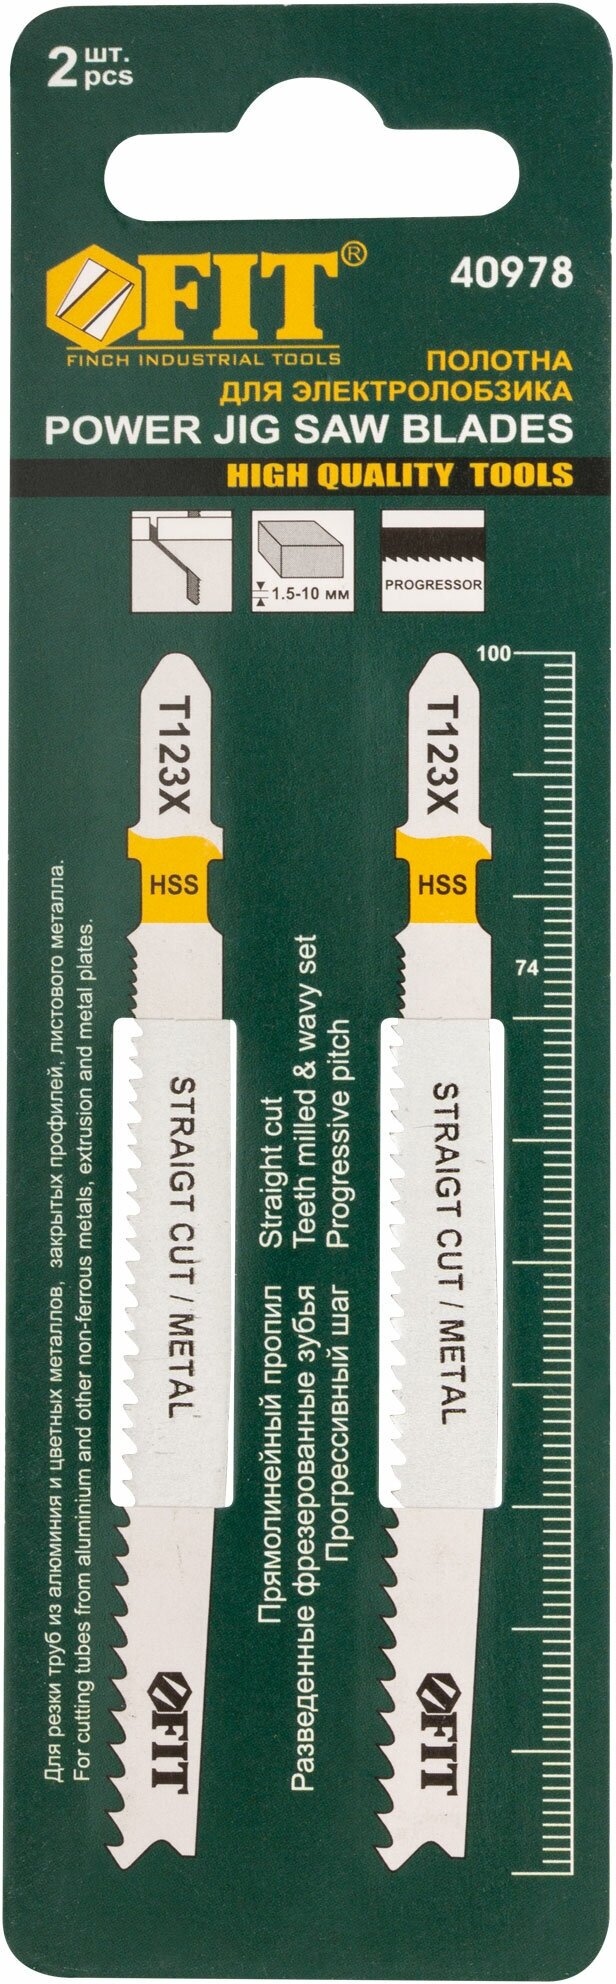 Полотна по алюминию и цв. мет, HSS, фрезерованные зубья, 100/74 мм, переменный шаг (T123X), 2 шт.